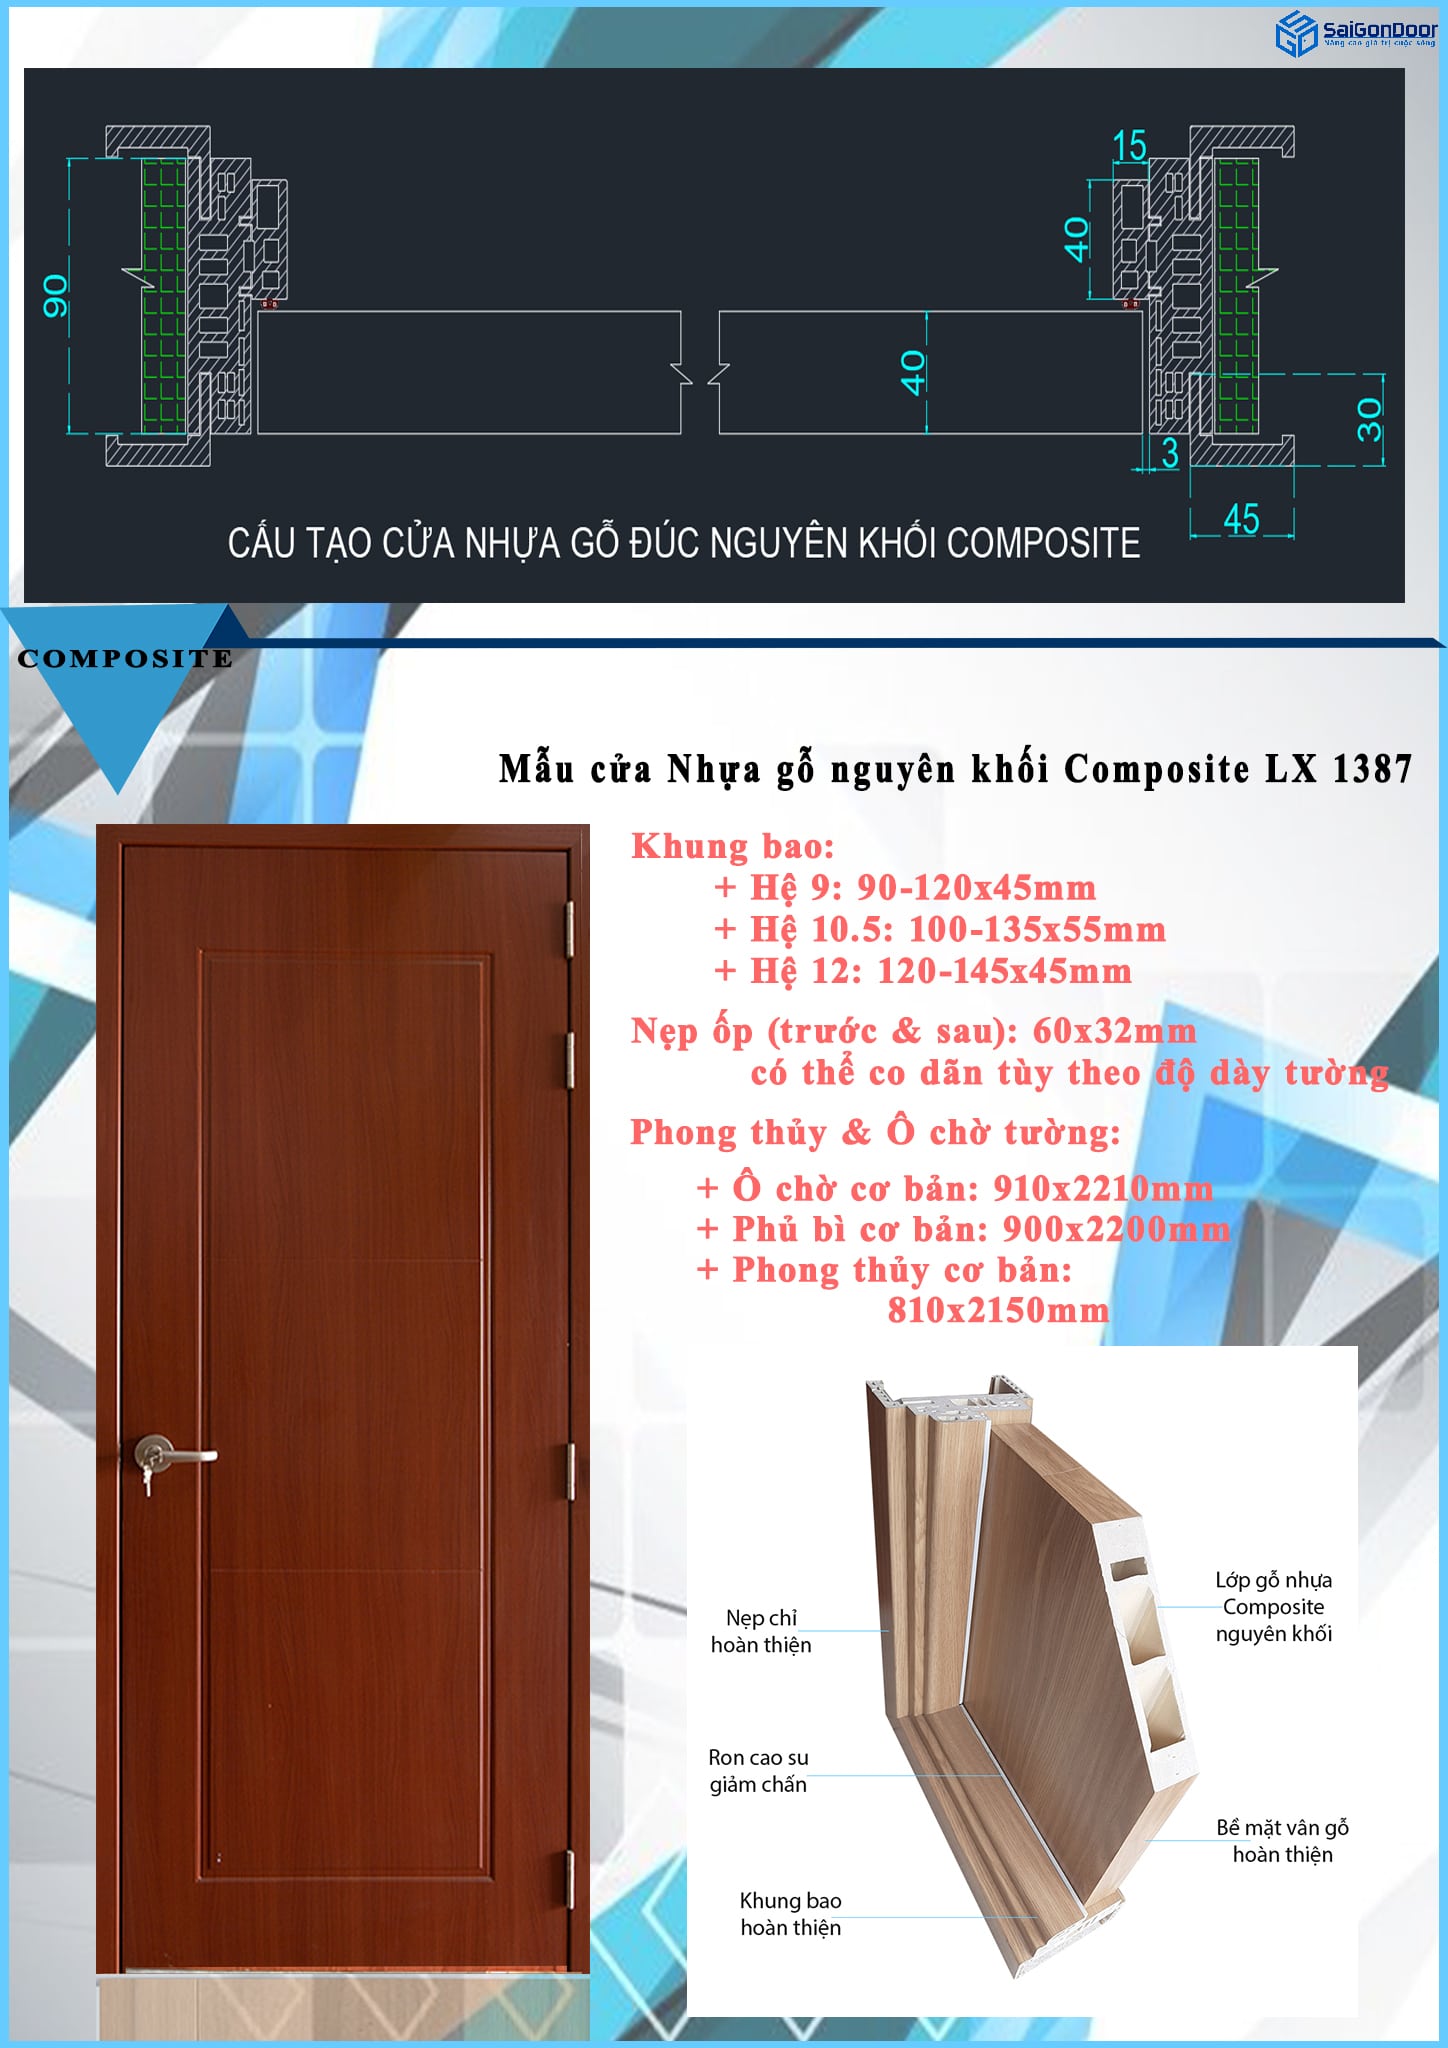 Cấu tạo mẫu cửa nhựa gỗ nguyên khối composite LX 1387